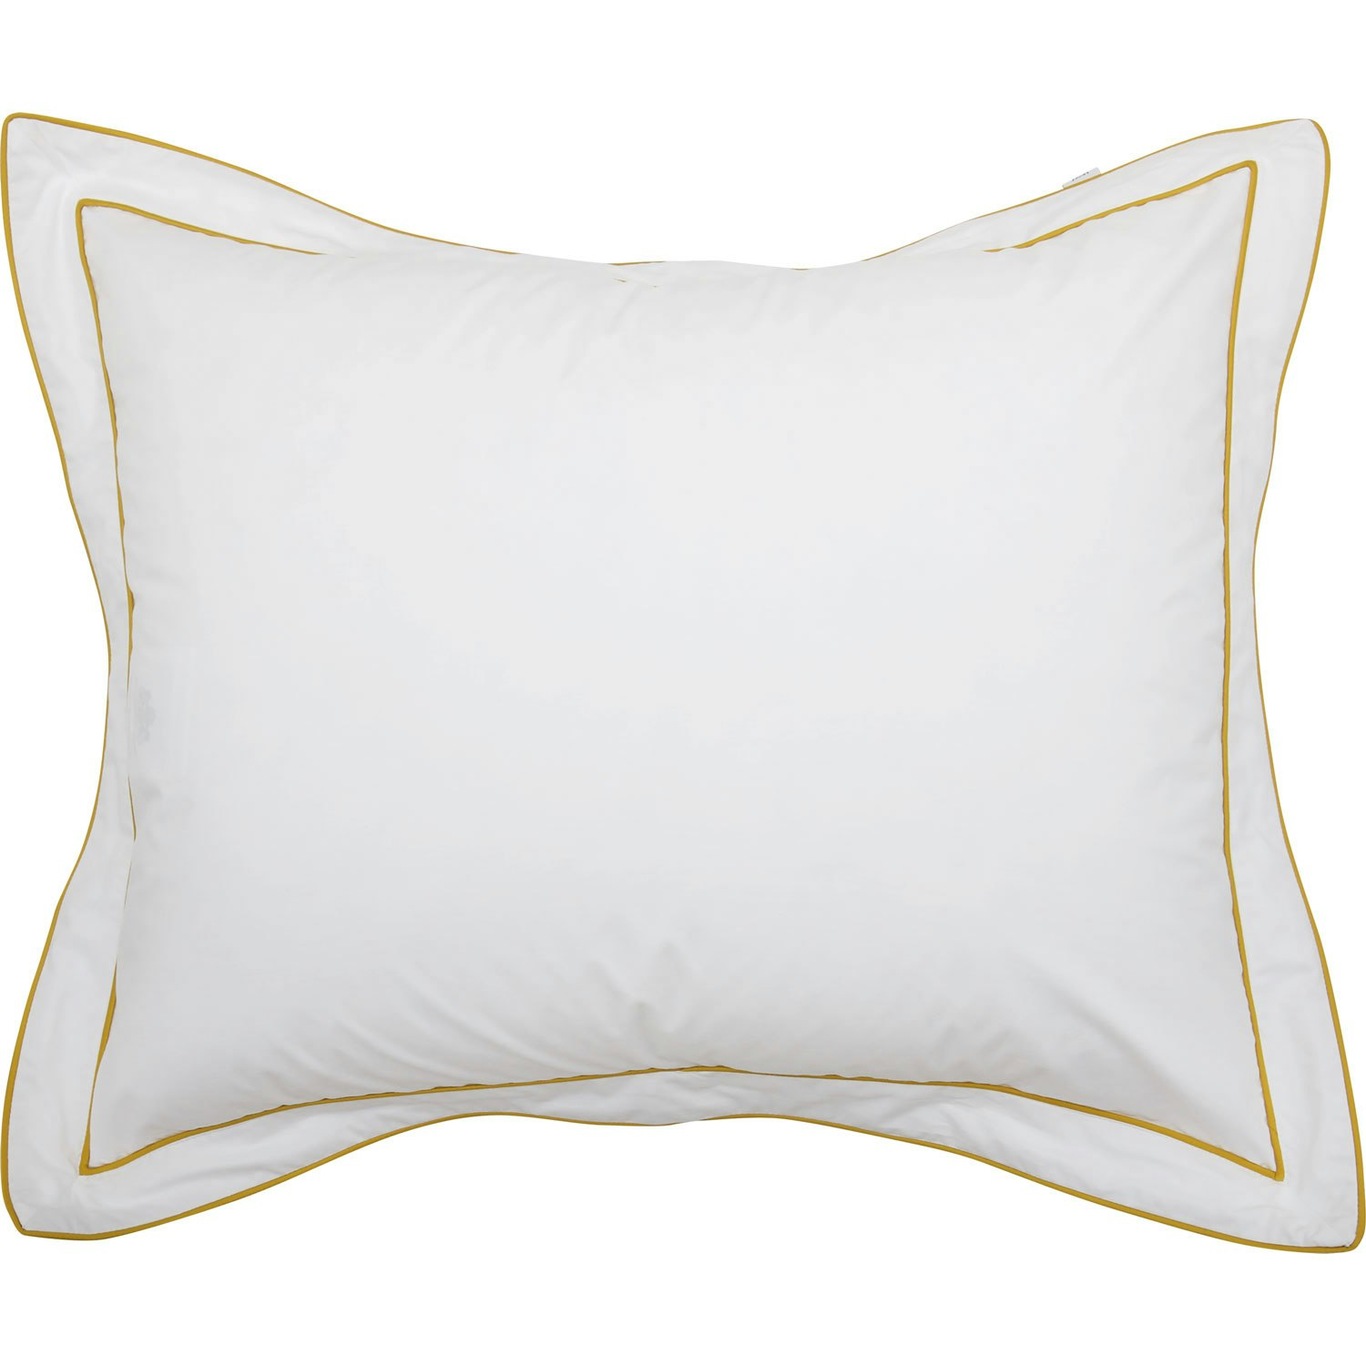 Allegro Pillowcase Eco Yellow, 50x70 cm